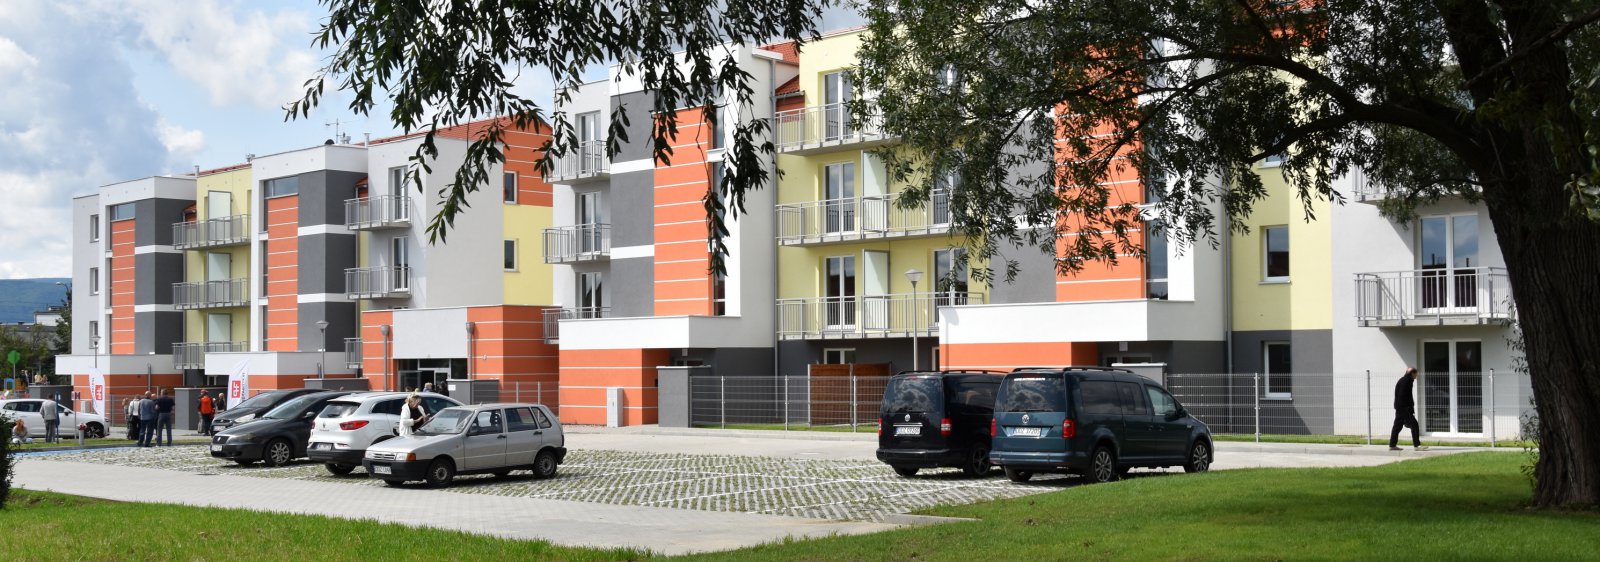 Nowy trzypiętrowy budynej z białą i pomarańczową elewacją, przed nim duży parking